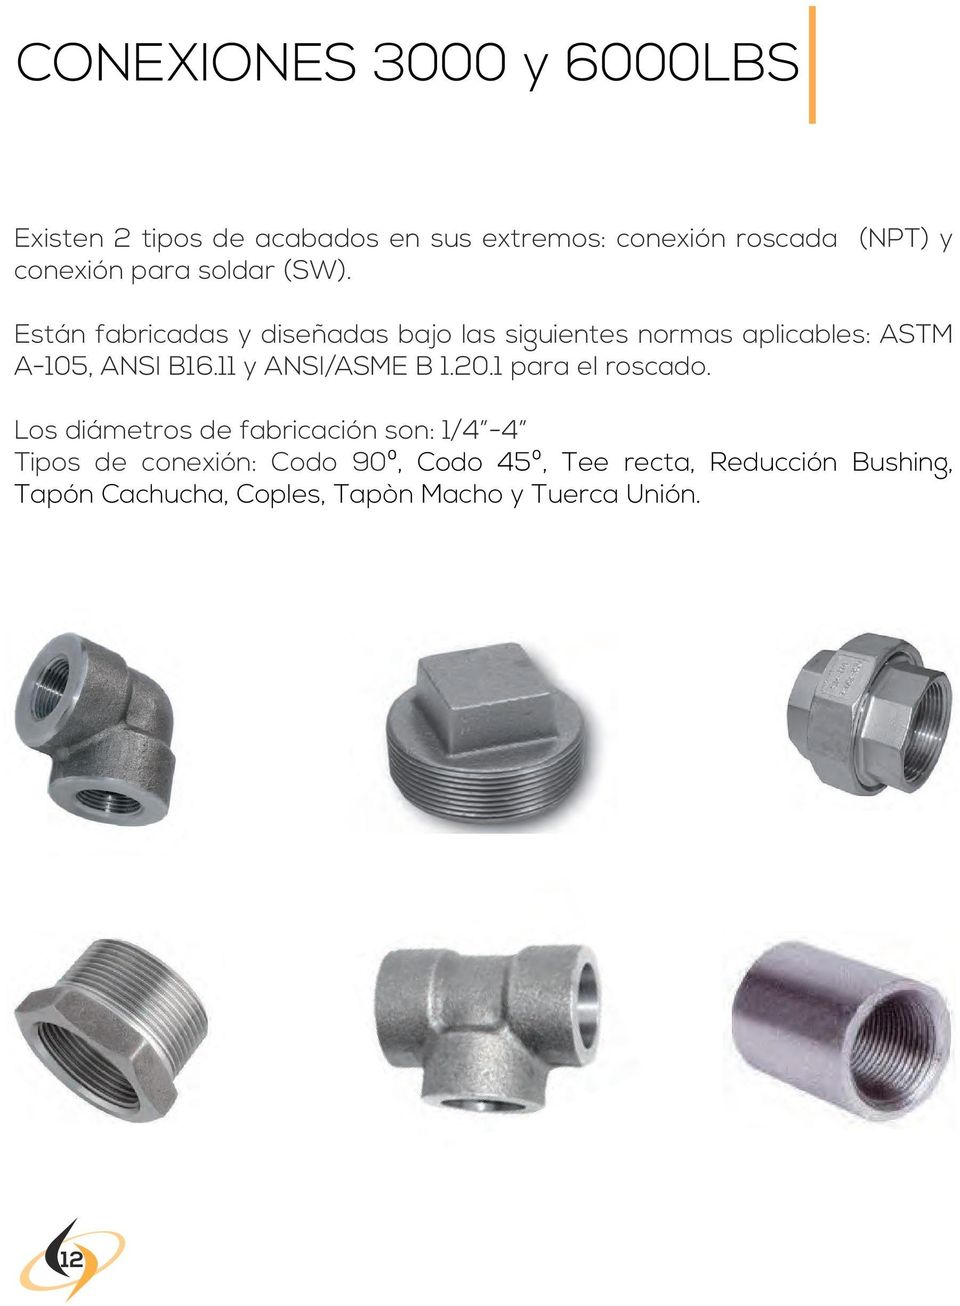 Están fabricadas y diseñadas bajo las siguientes normas aplicables: ASTM A-105, ANSI B16.